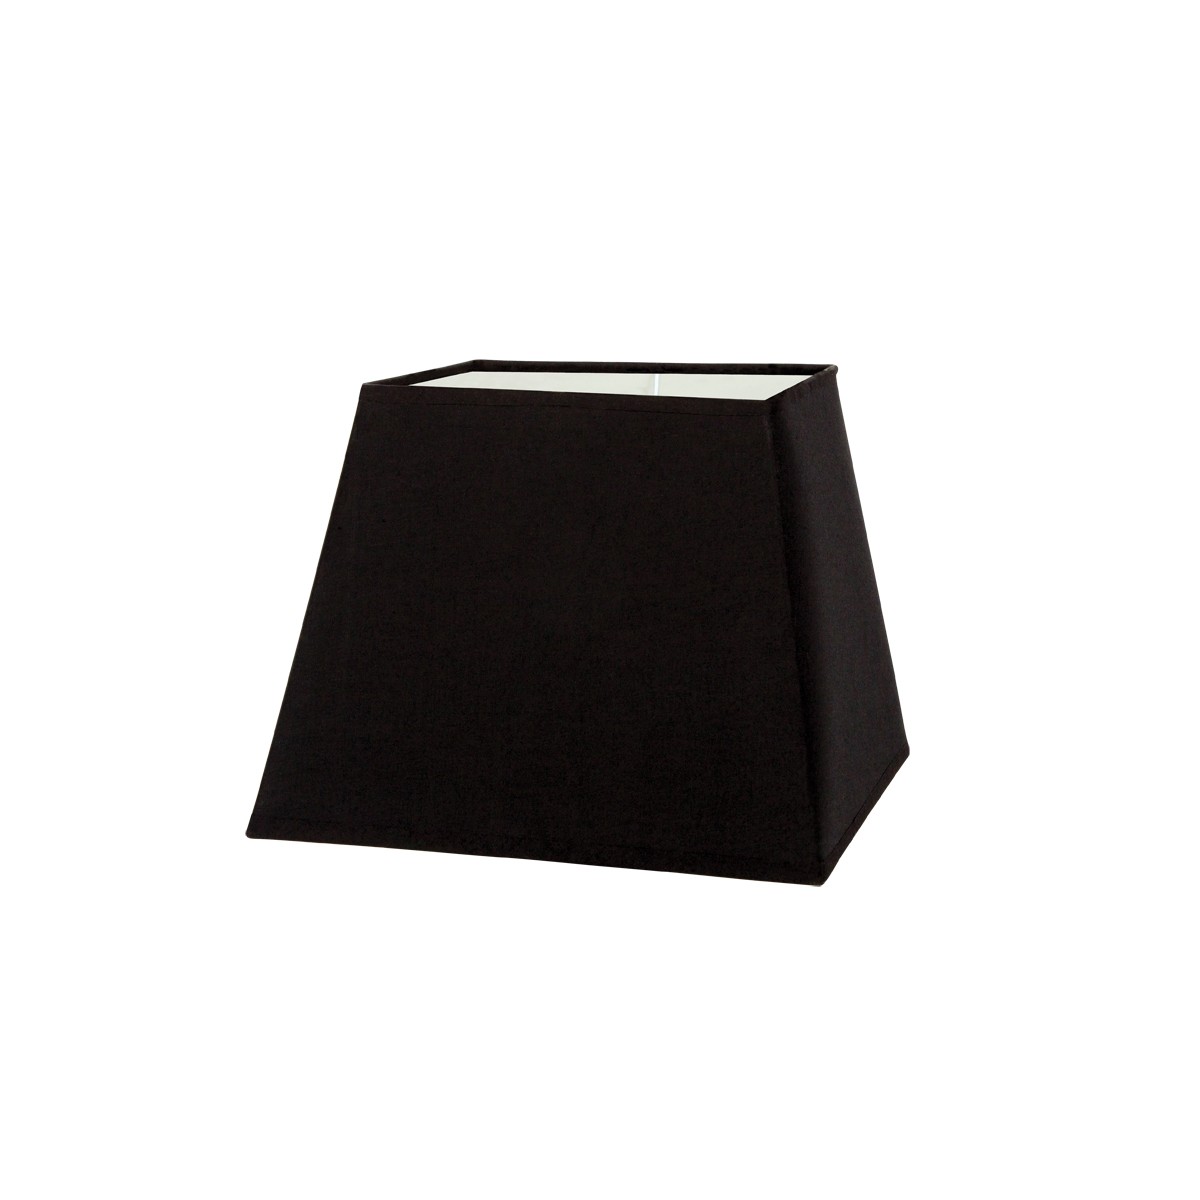 Καπέλο μονόχρωμο τραπέζιο 1 cotton 25cm κάτω πλευρά μαύρο VK/E27/E14/SM25/B